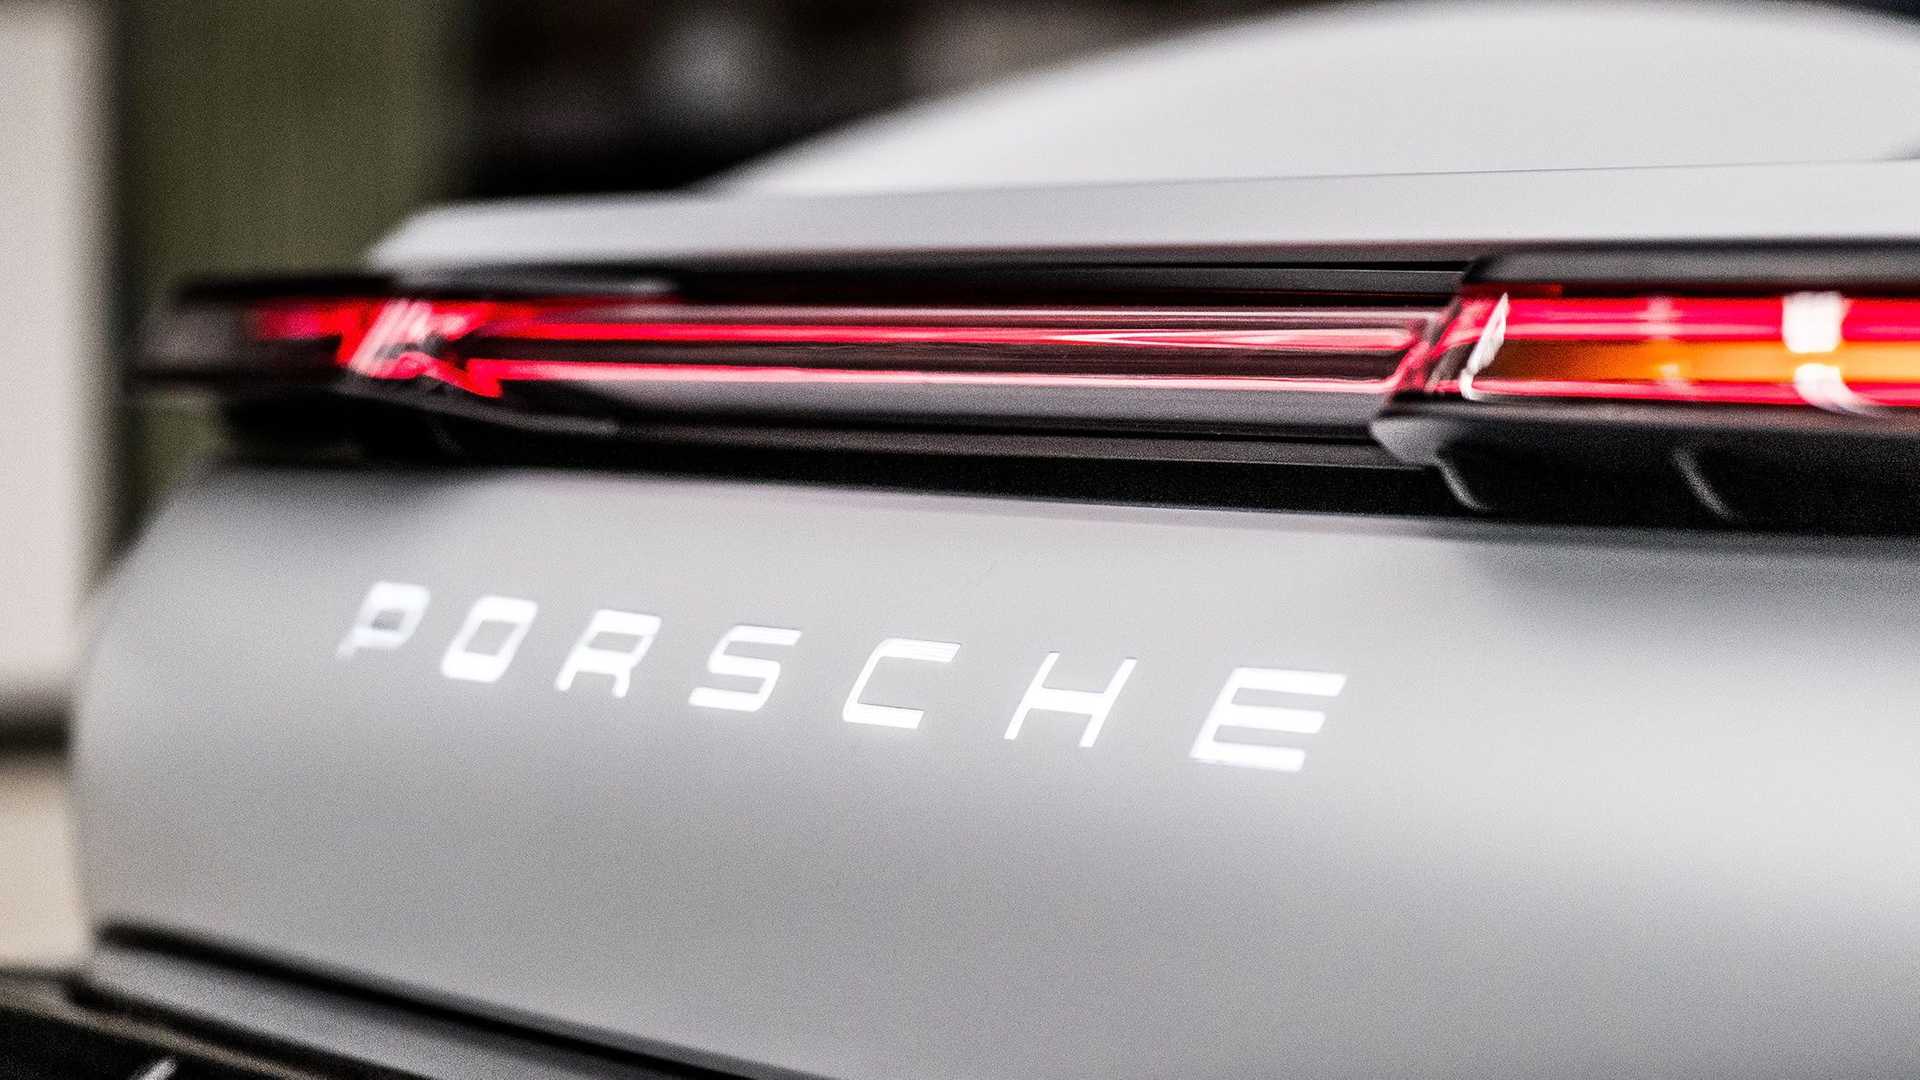 Porsche suv elettrico